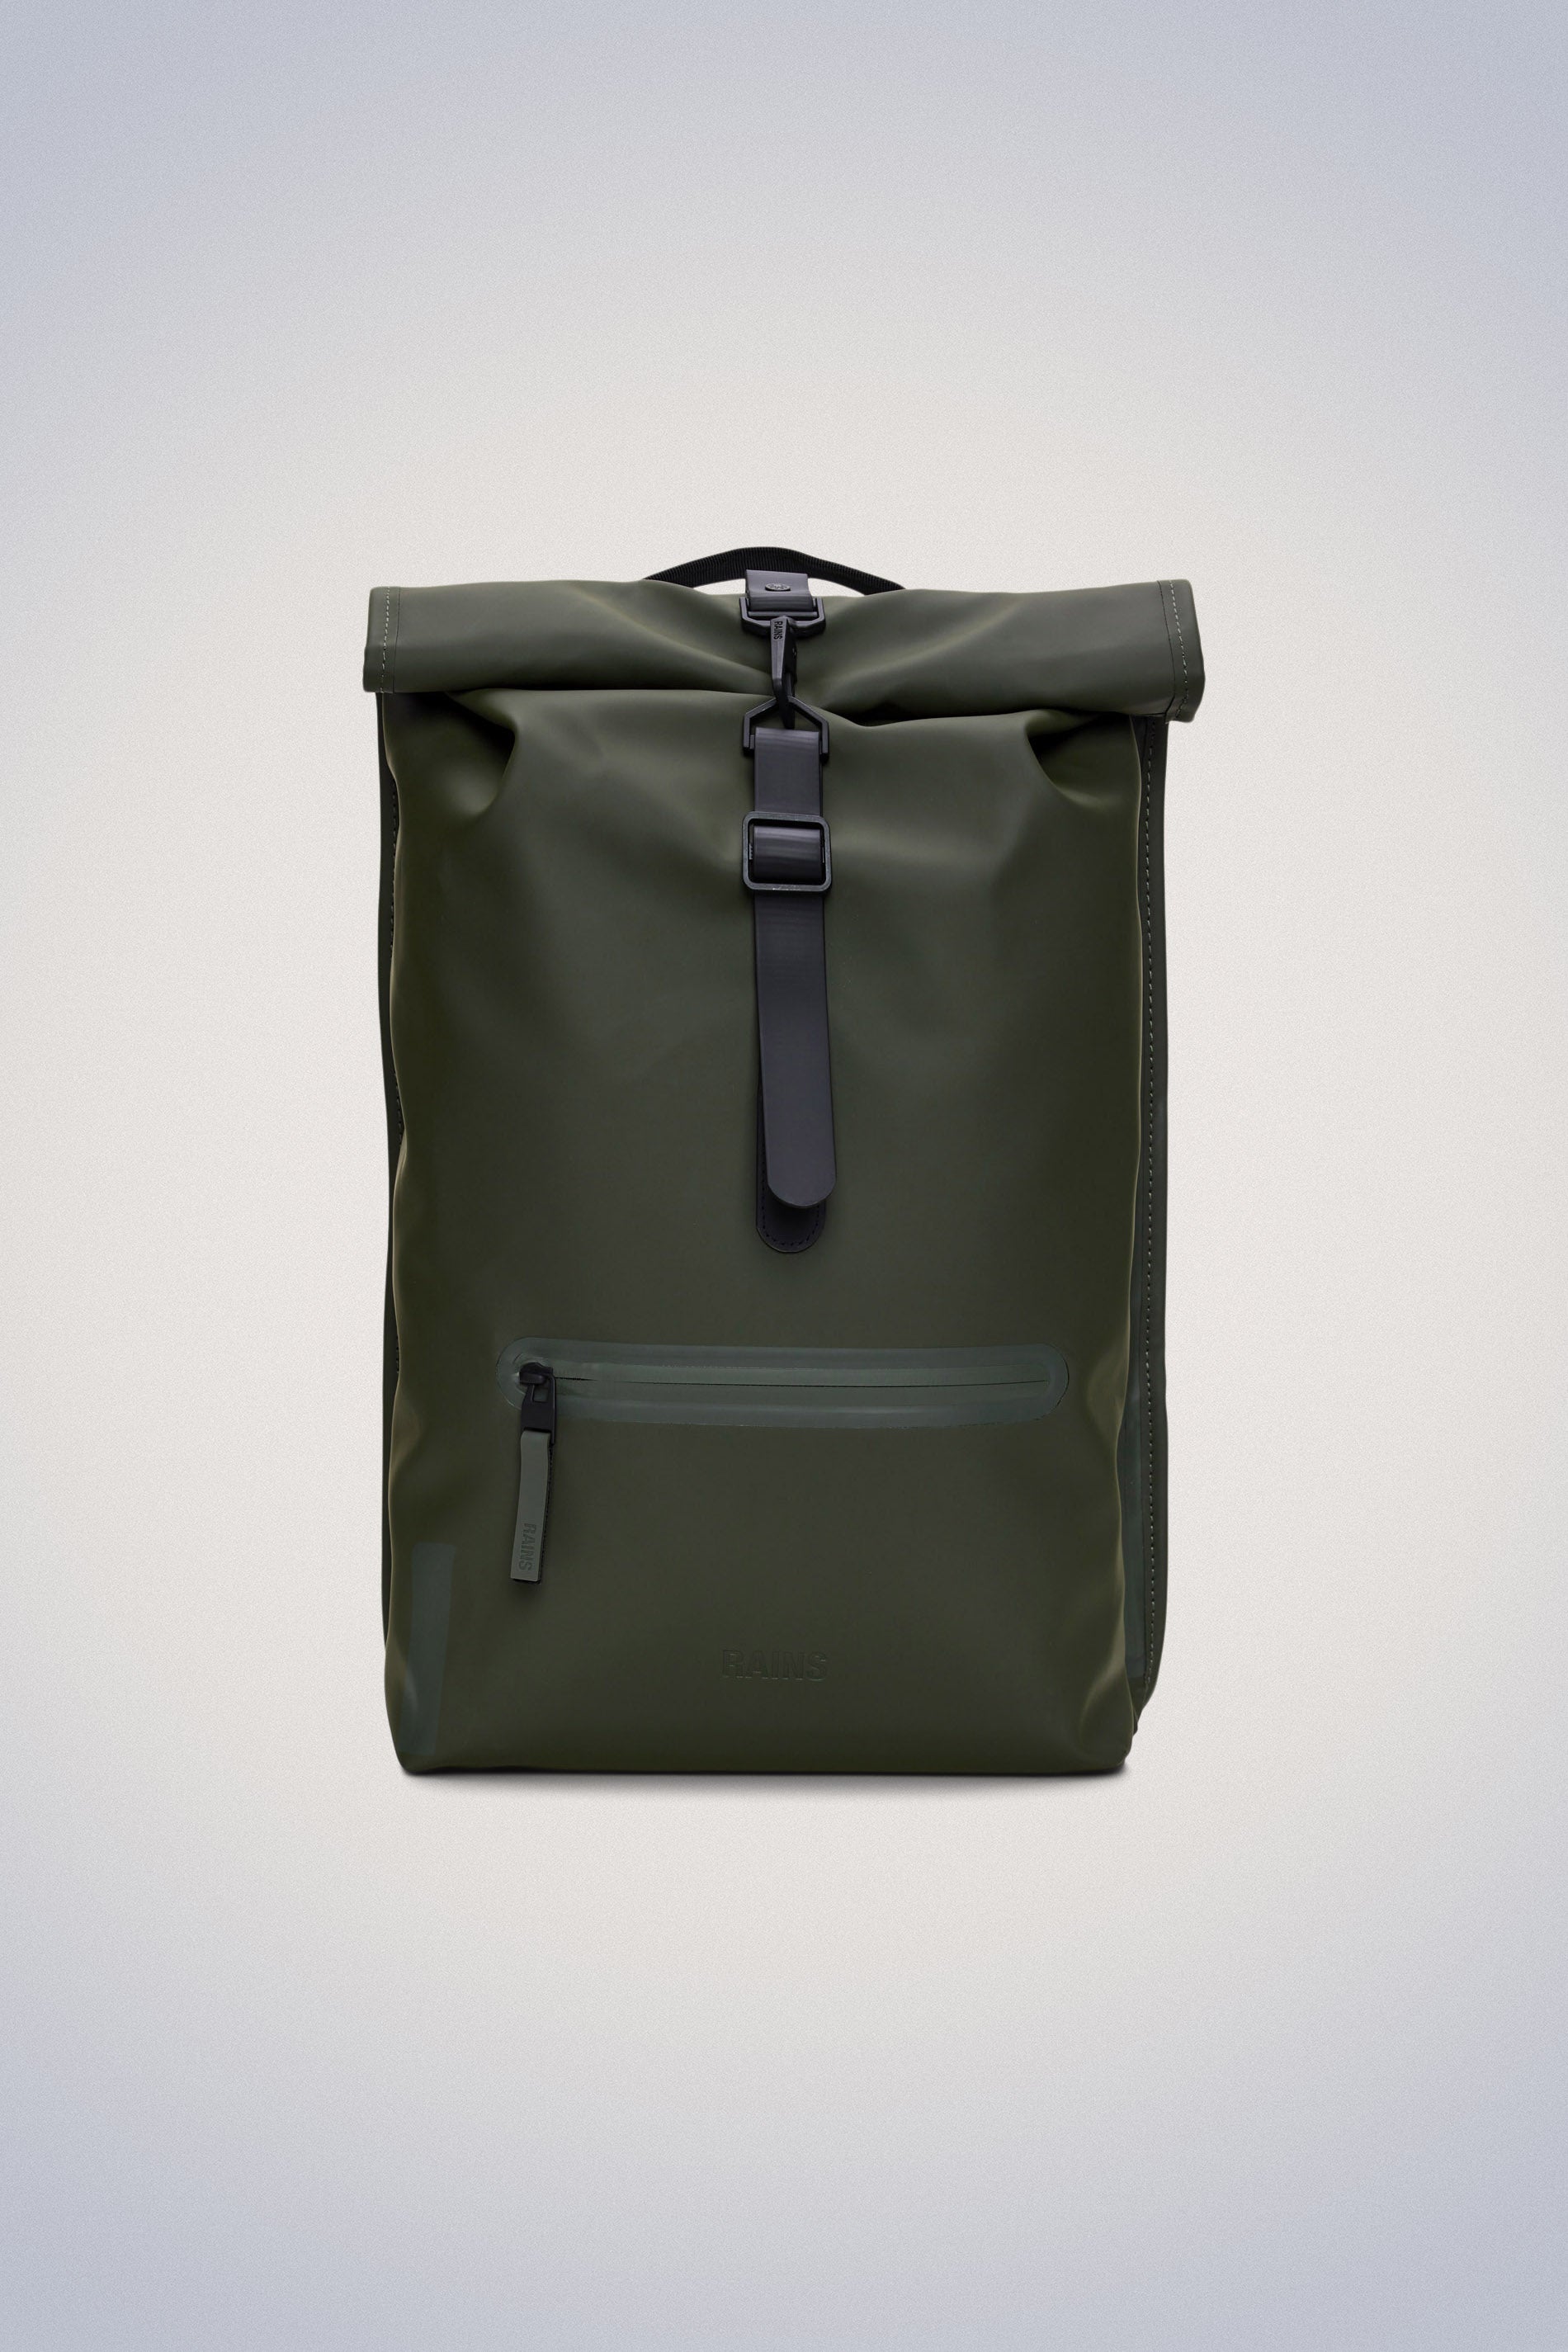 Waterproof Backpack | Buy Rain Resistant Rucksack & Daypack here